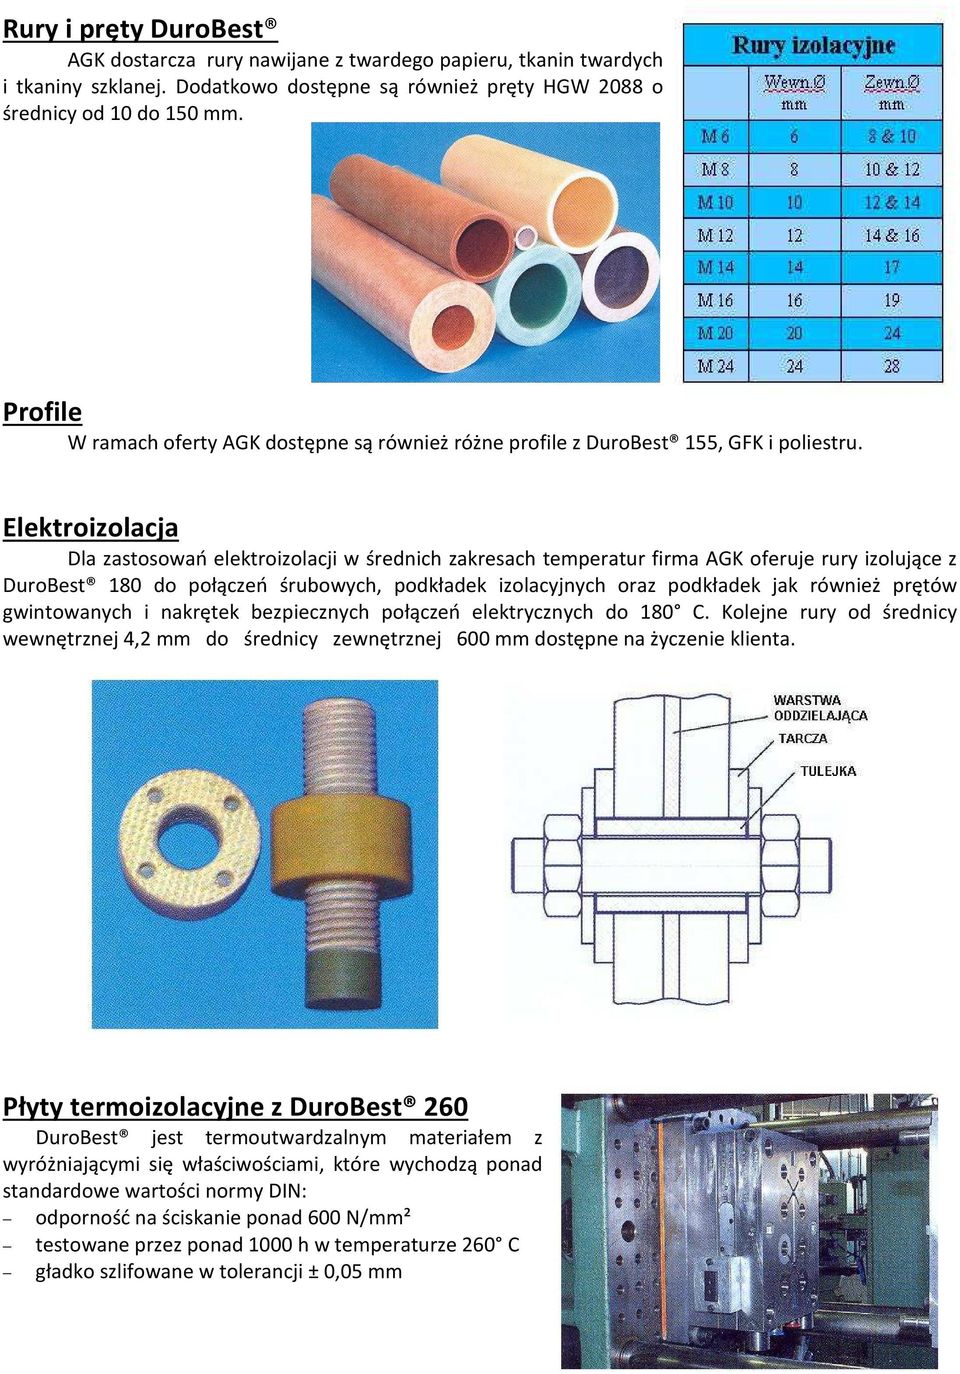 Elektroizolacja Dla zastosowań elektroizolacji w średnich zakresach temperatur firma AGK oferuje rury izolujące z DuroBest 180 do połączeń śrubowych, podkładek izolacyjnych oraz podkładek jak również